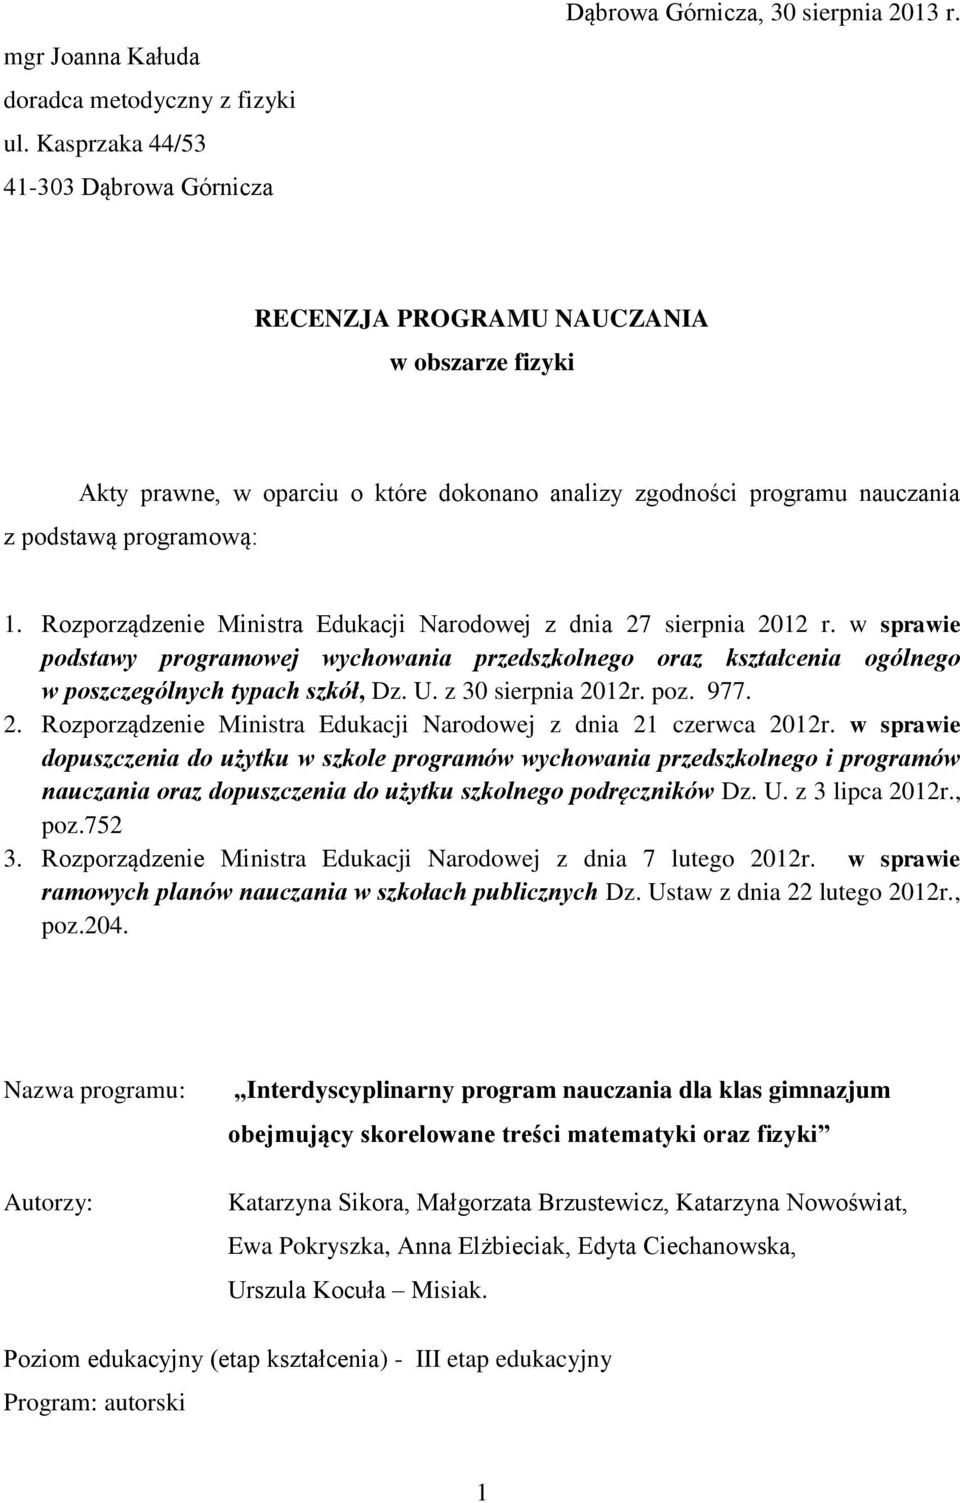 Rozporządzenie Ministra Edukacji Narodowej z dnia 27 sierpnia 2012 r. w sprawie podstawy programowej wychowania przedszkolnego oraz kształcenia ogólnego w poszczególnych typach szkół, Dz. U.